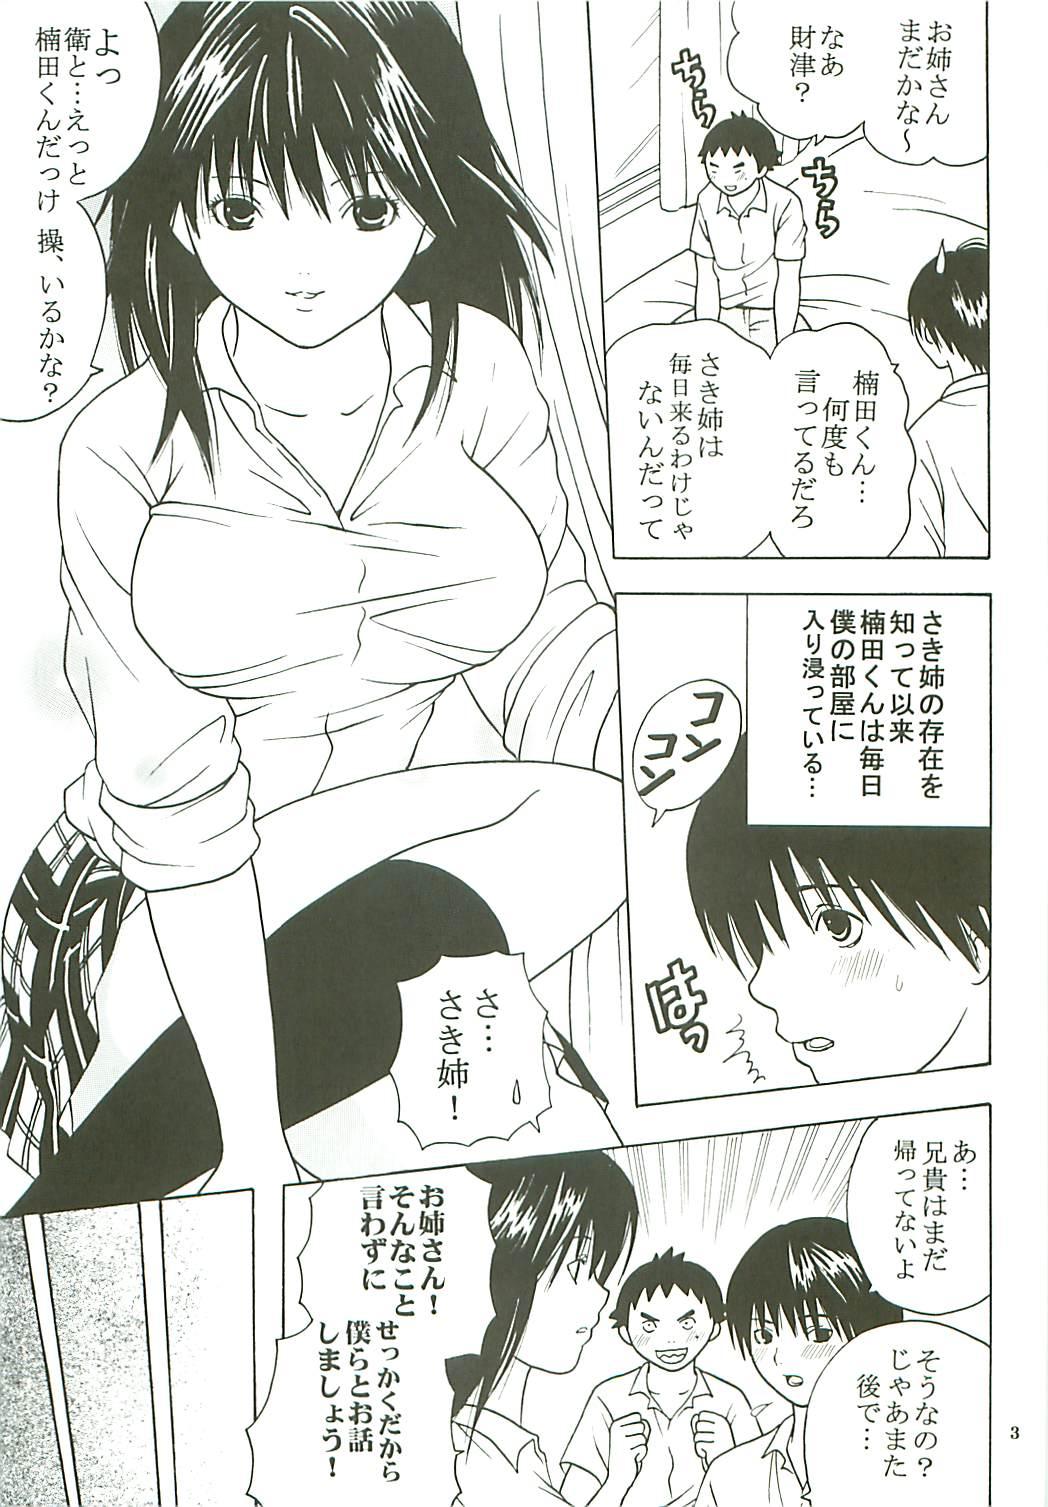 Young Tits Chitsui Gentei Nakadashi Limited vol.3 - Hatsukoi limited Ninfeta - Page 4